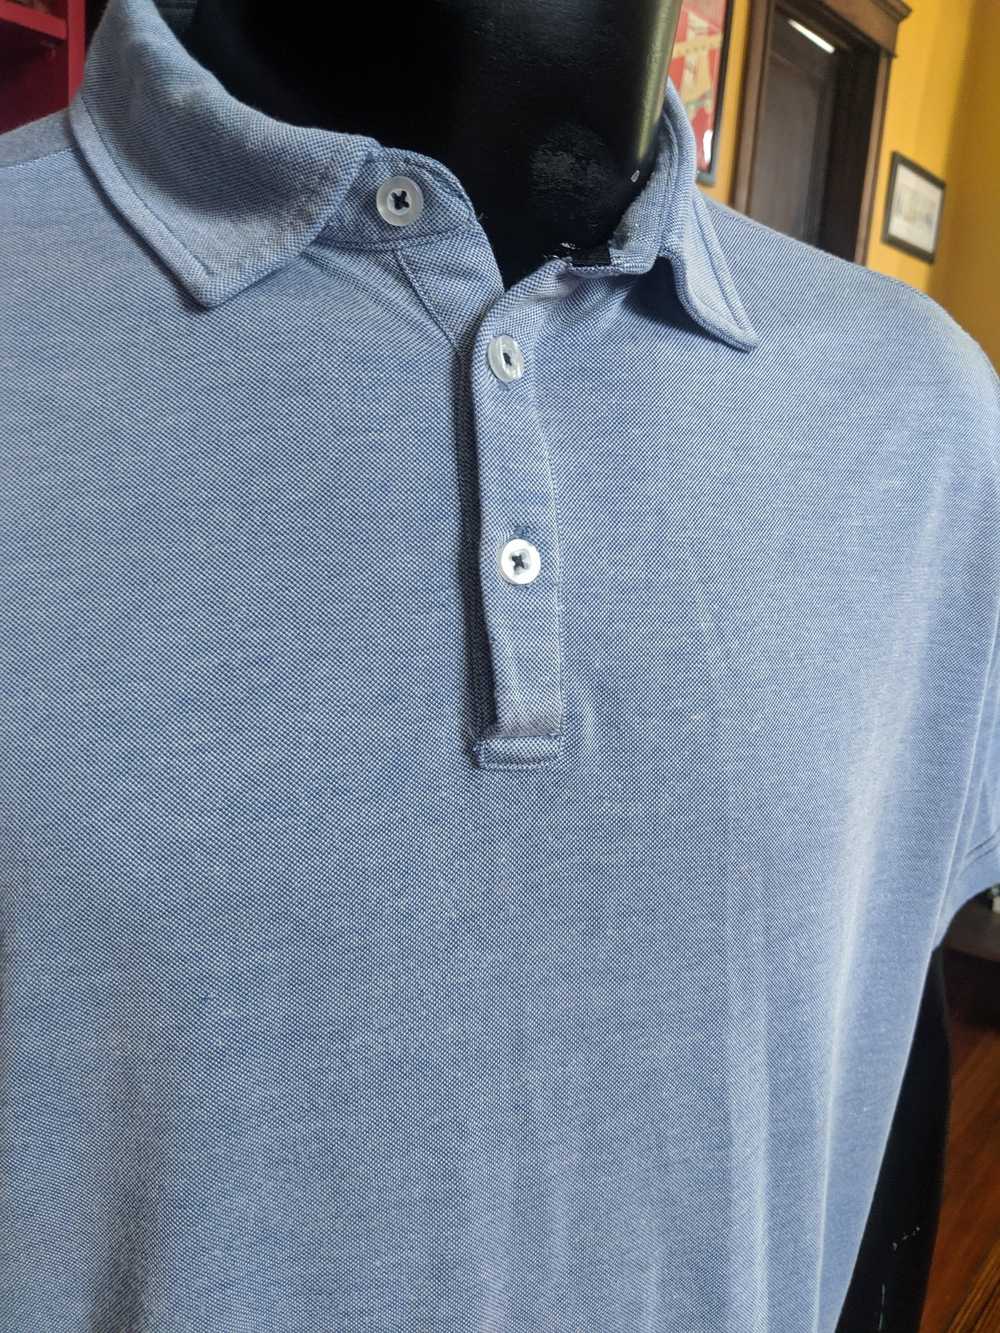 Nat Nast Blue/grey knit polo shirt - image 3